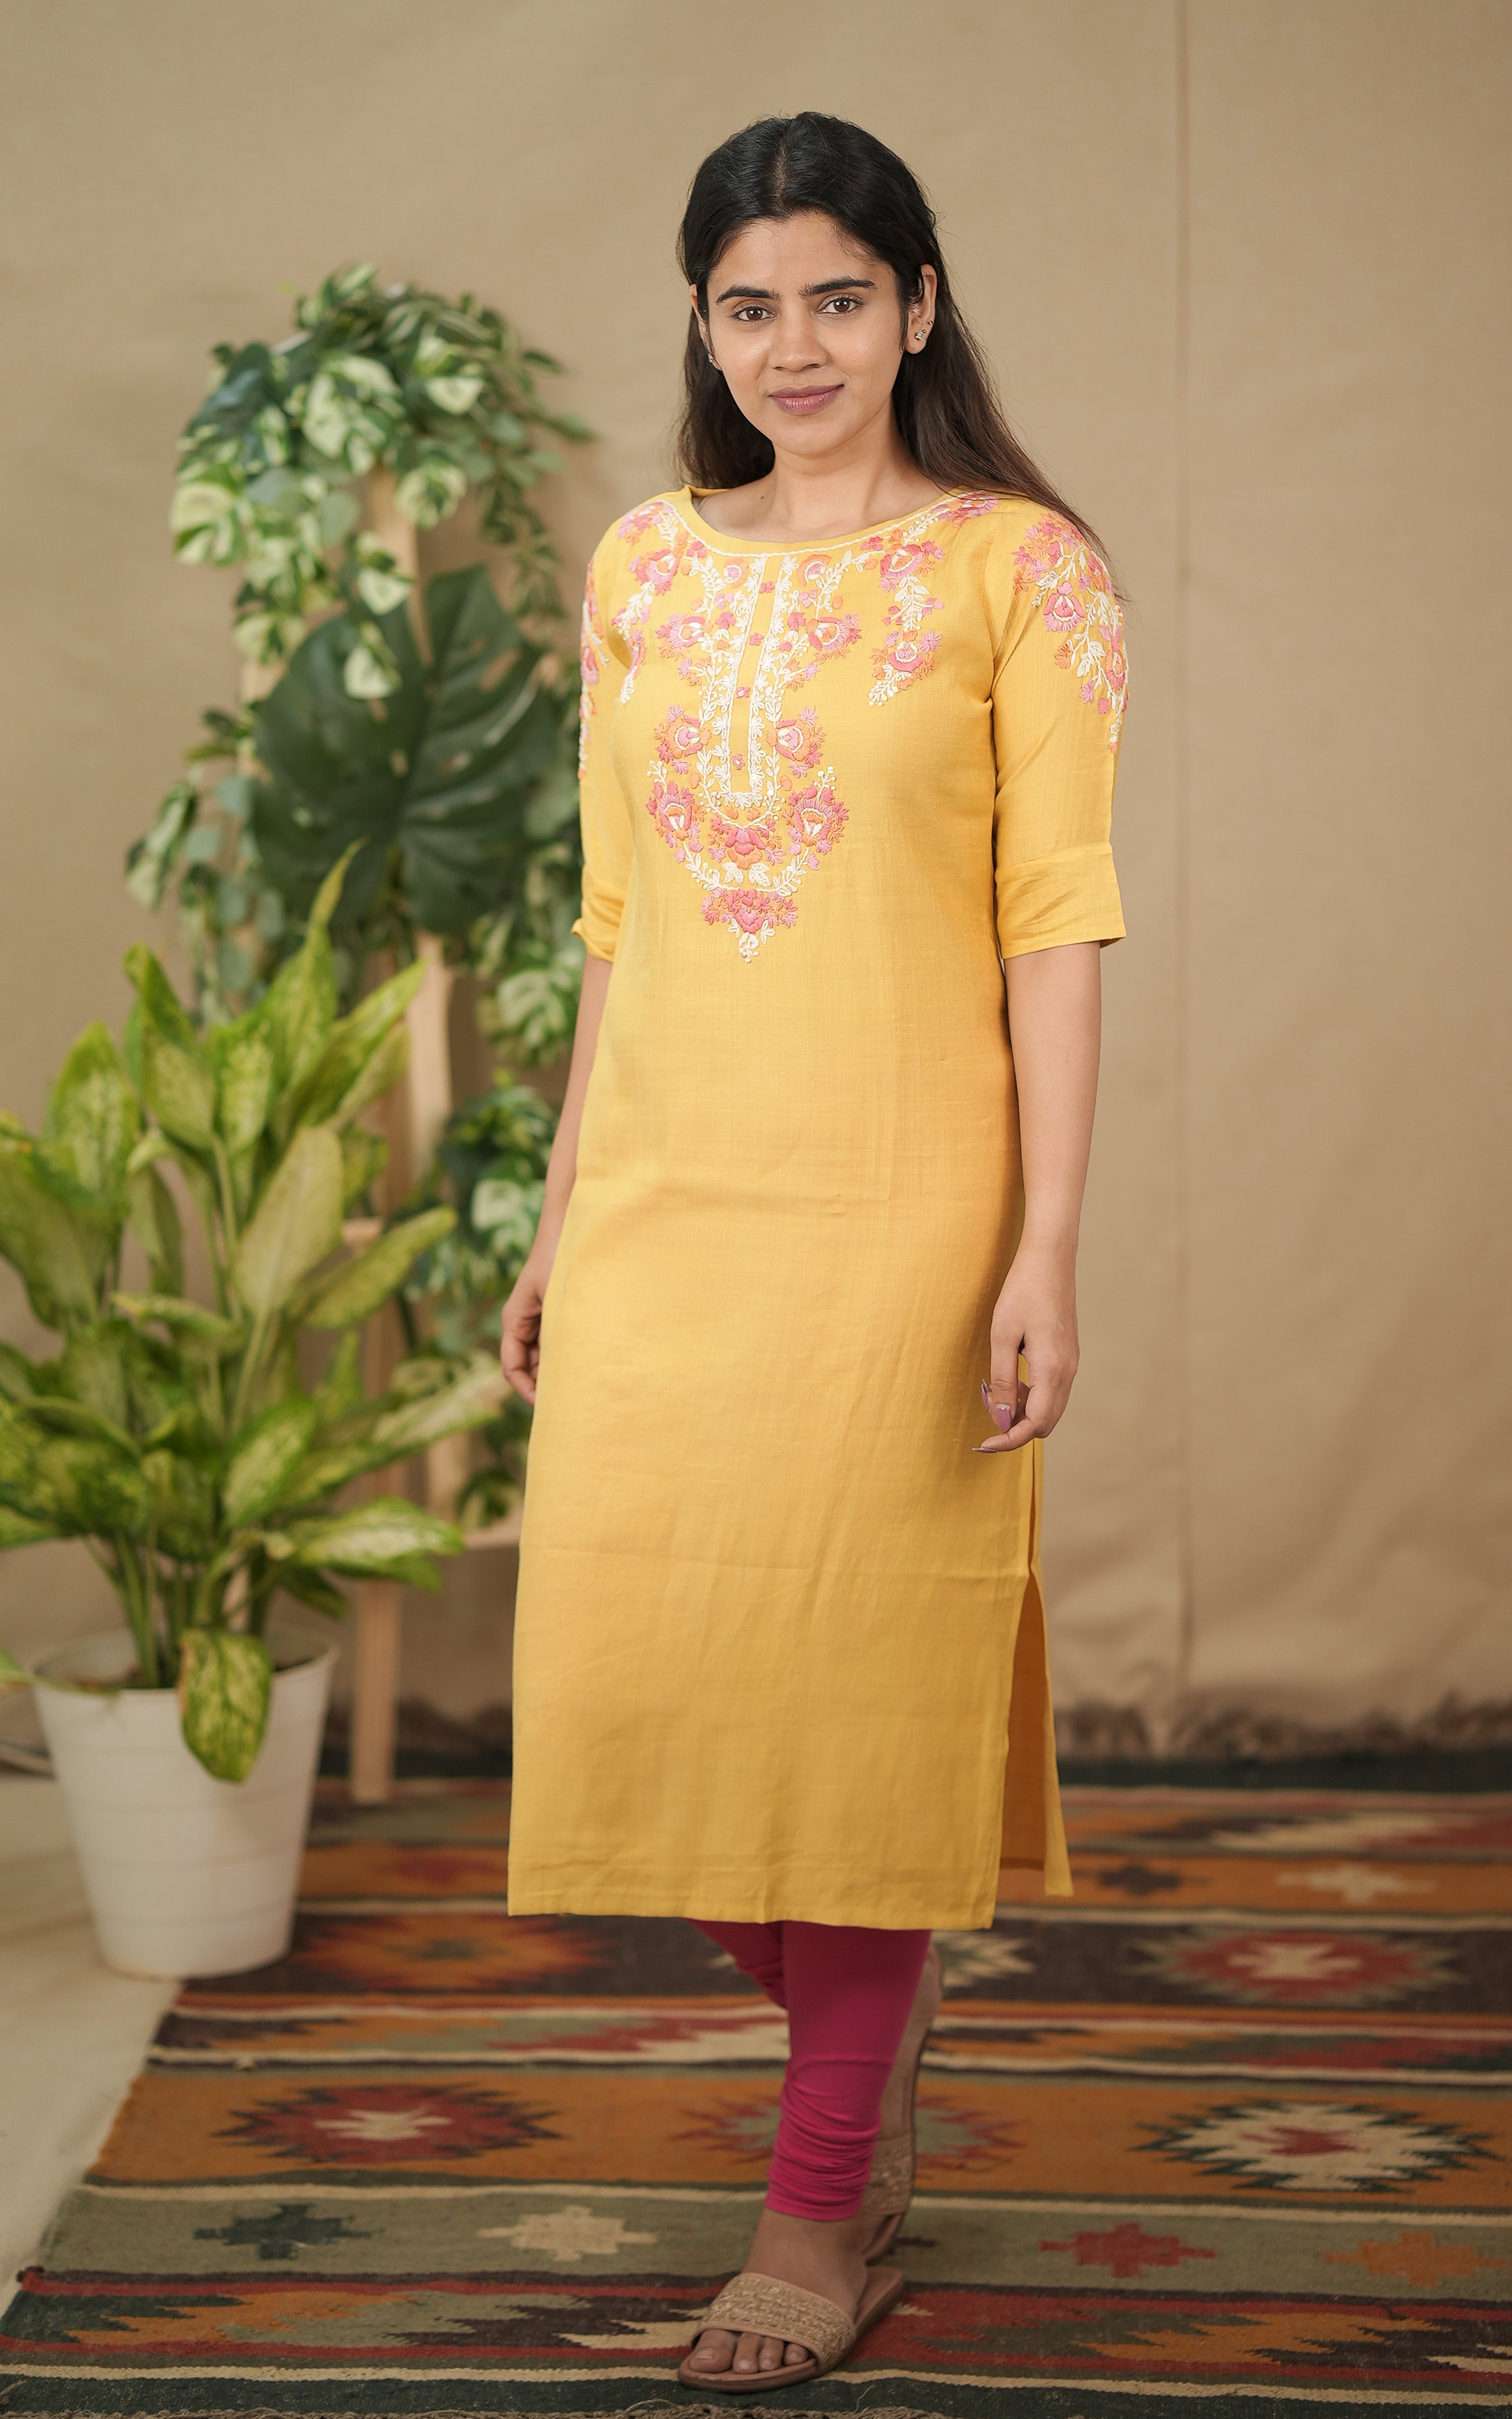 instore kurti rishi straight cut cotton blend, embroidered front yoke yellow color kurti 